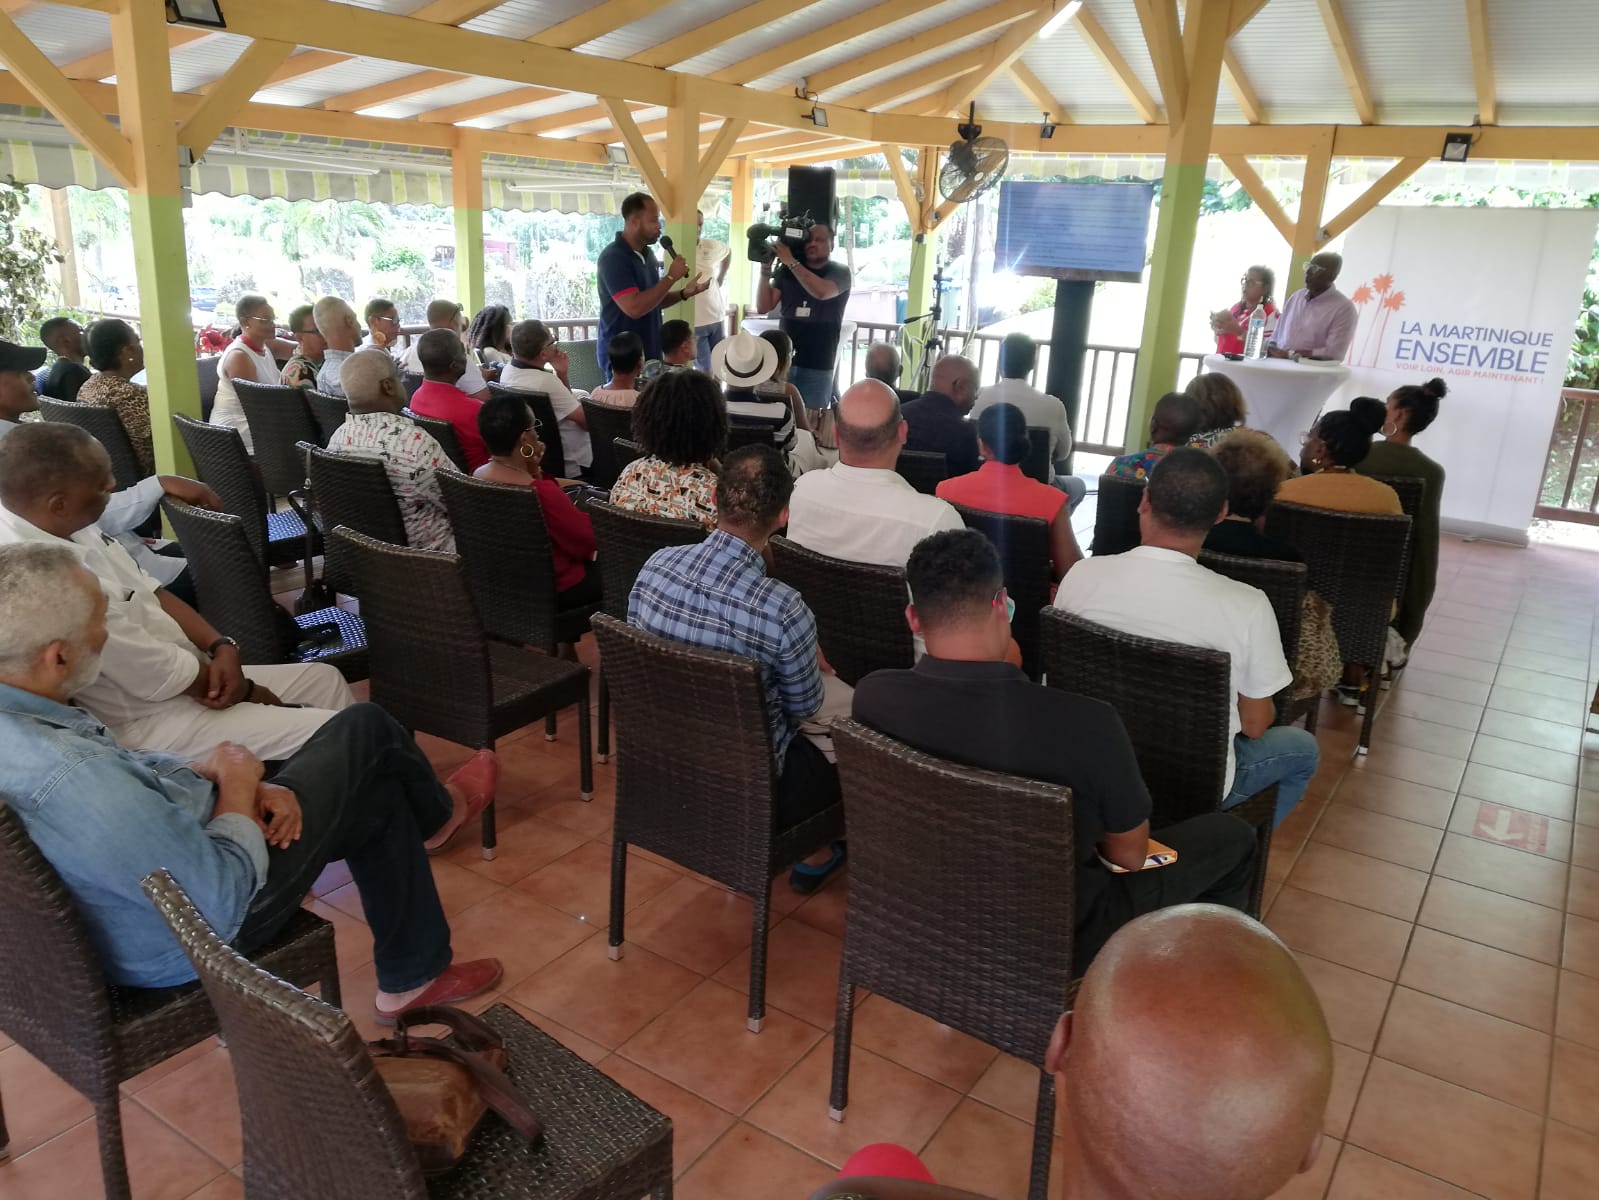     Les premières universités de La Martinique Ensemble attirent au-delà du parti

